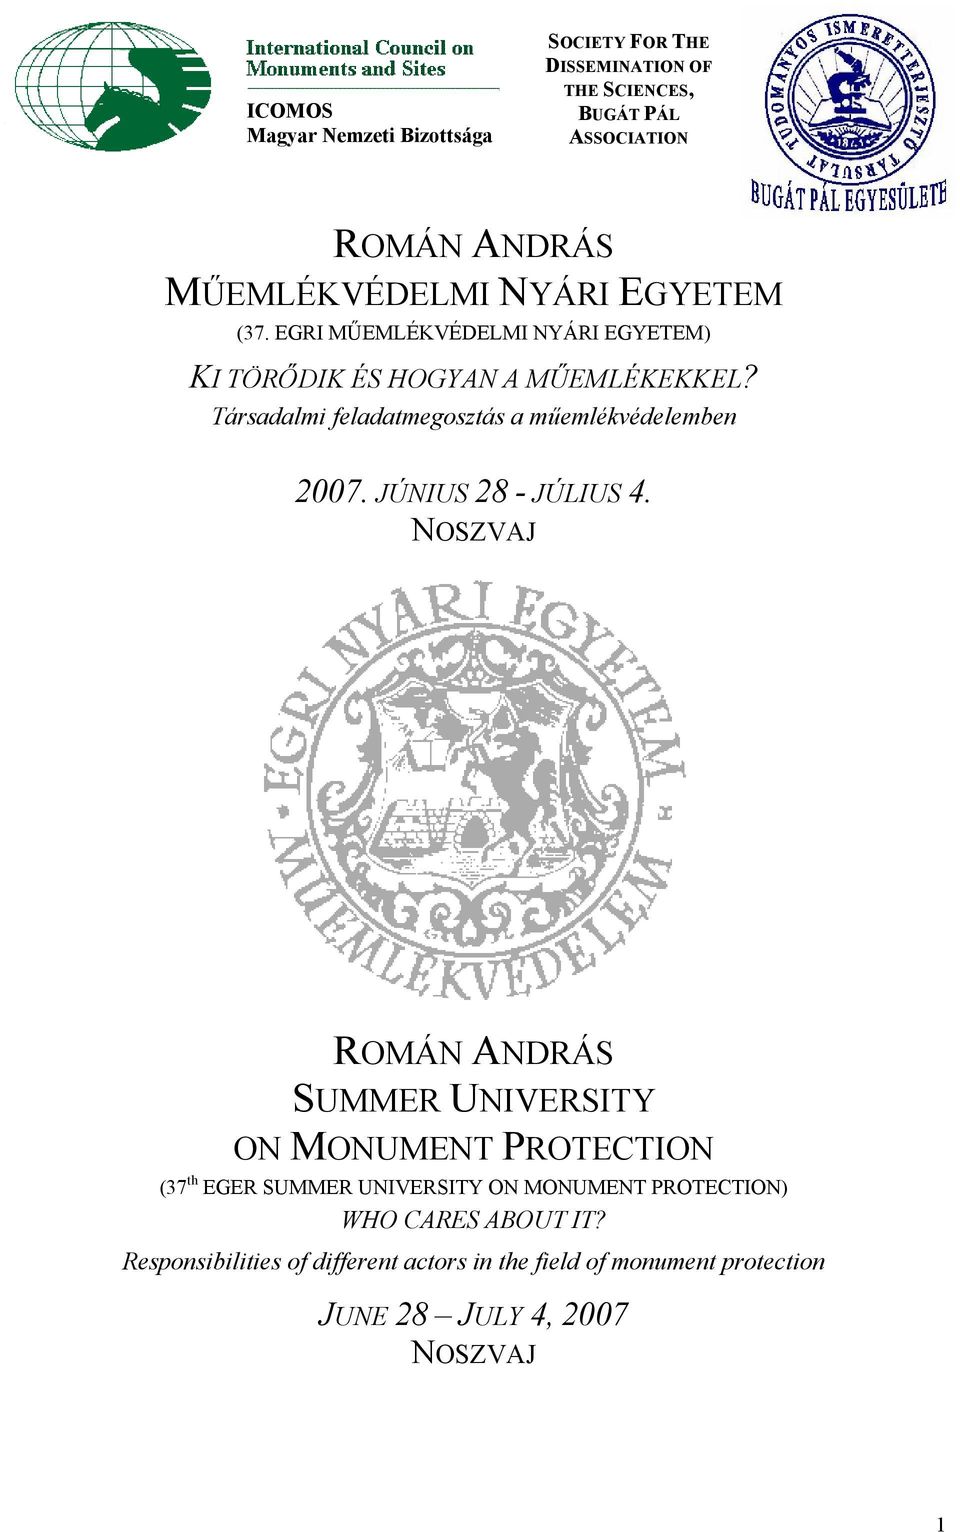 Társadalmi feladatmegosztás a műemlékvédelemben 2007. JÚNIUS 28 - JÚLIUS 4.